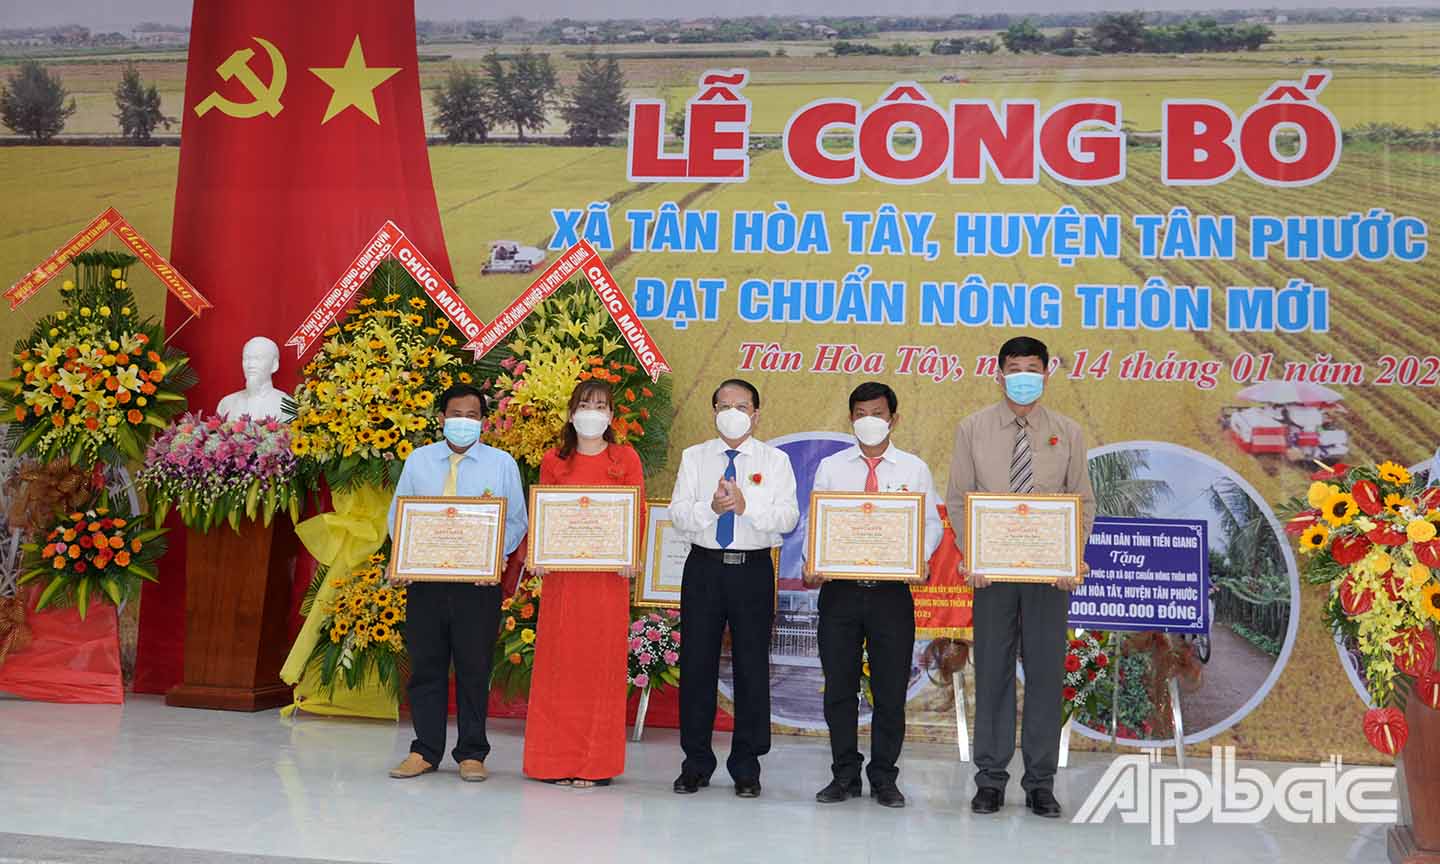 Đồng chí Phạm Văn Trọng trao bằng khen cho các cá nhân có thành tích xuất sắc trong xây dựng xã nông thôn mới Tân Hòa Tây.